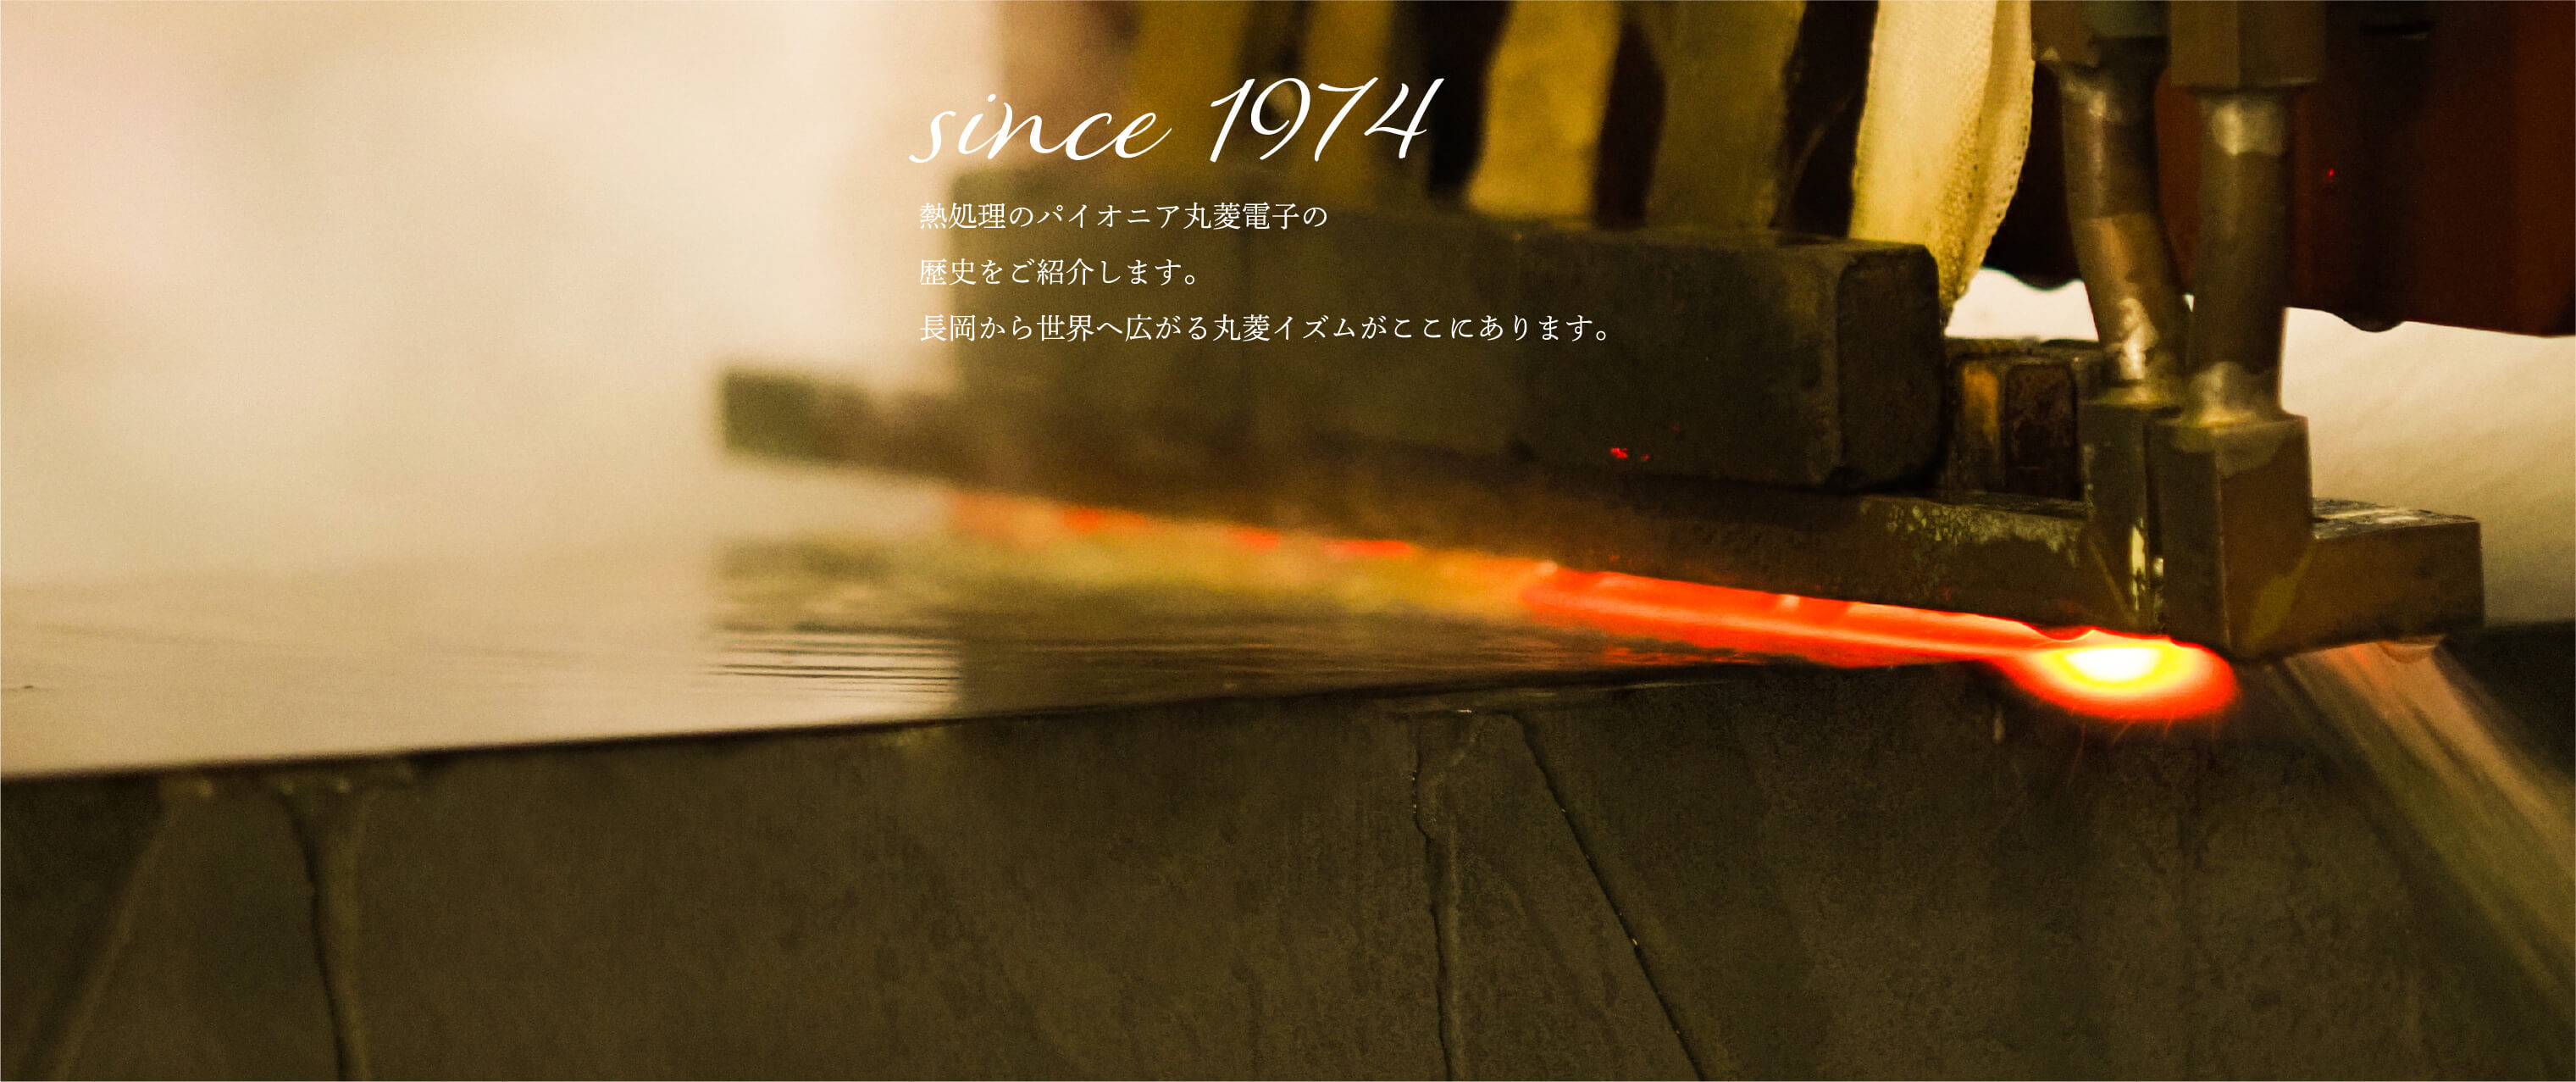 熱処理のパイオニア丸菱電子の歴史をご紹介します。長岡から世界へ広がる丸菱イズムがここにあります。